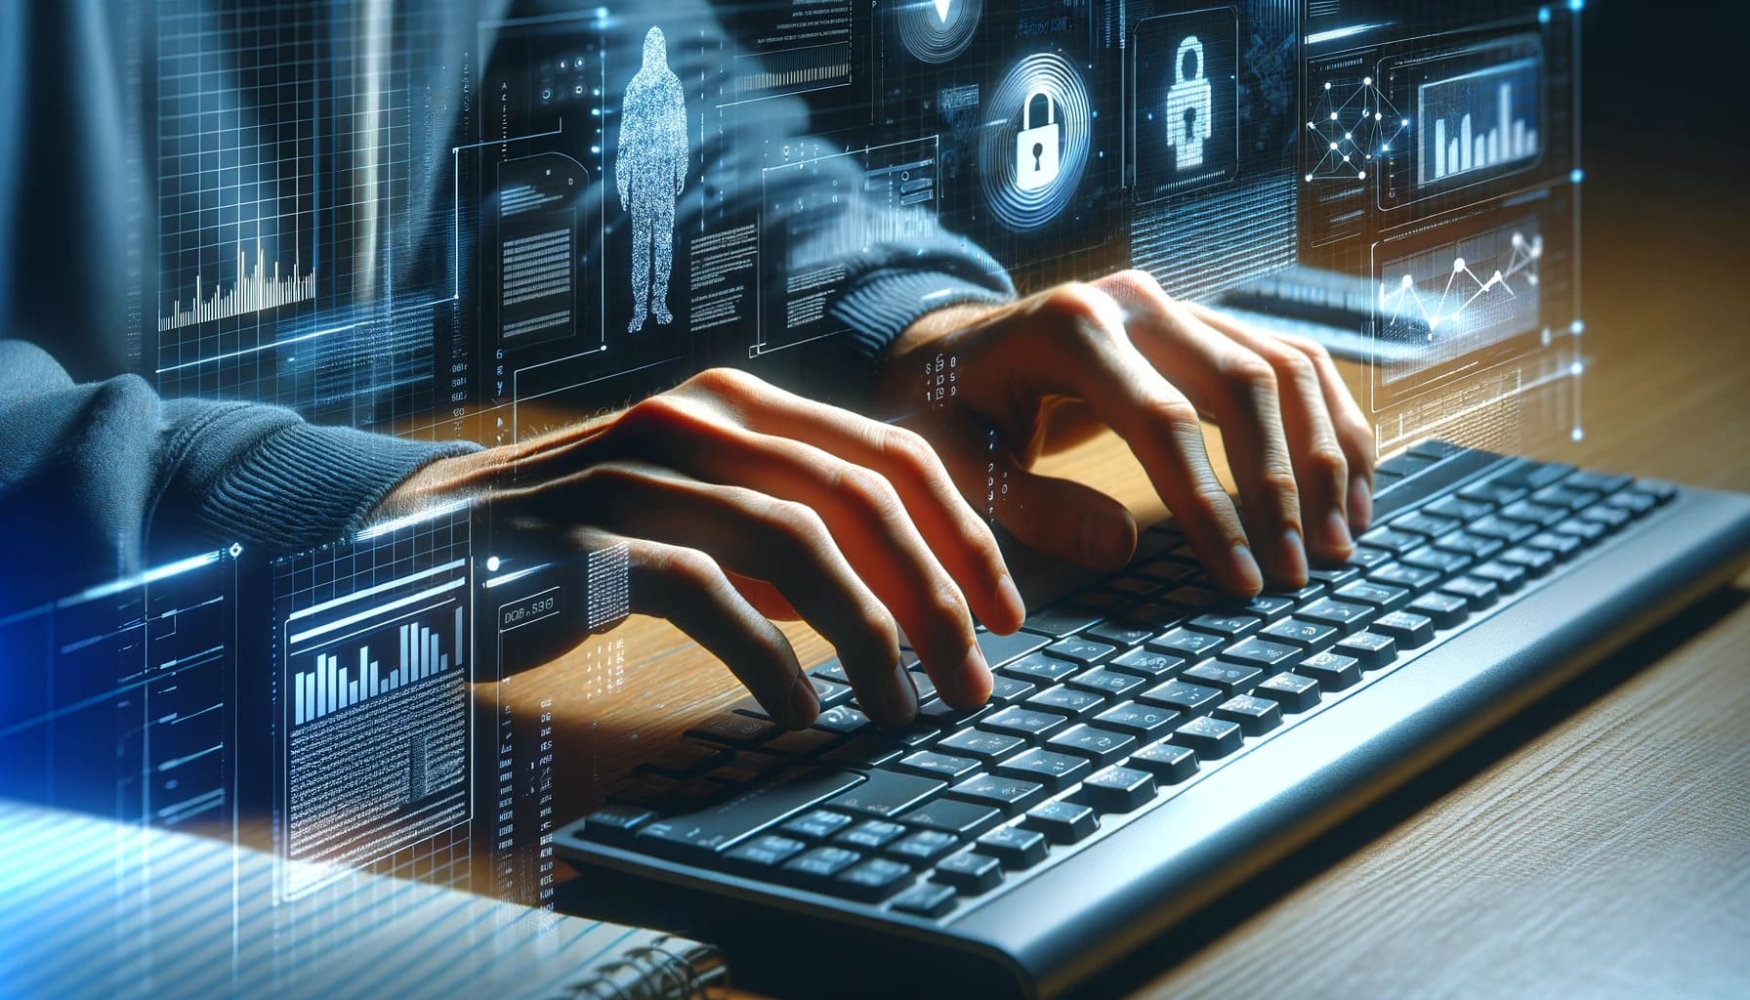 Infografía de un hombre escribiendo en un teclado, con un fondo futurista detrás de él y una imagen digital de una mano sobre el teclado